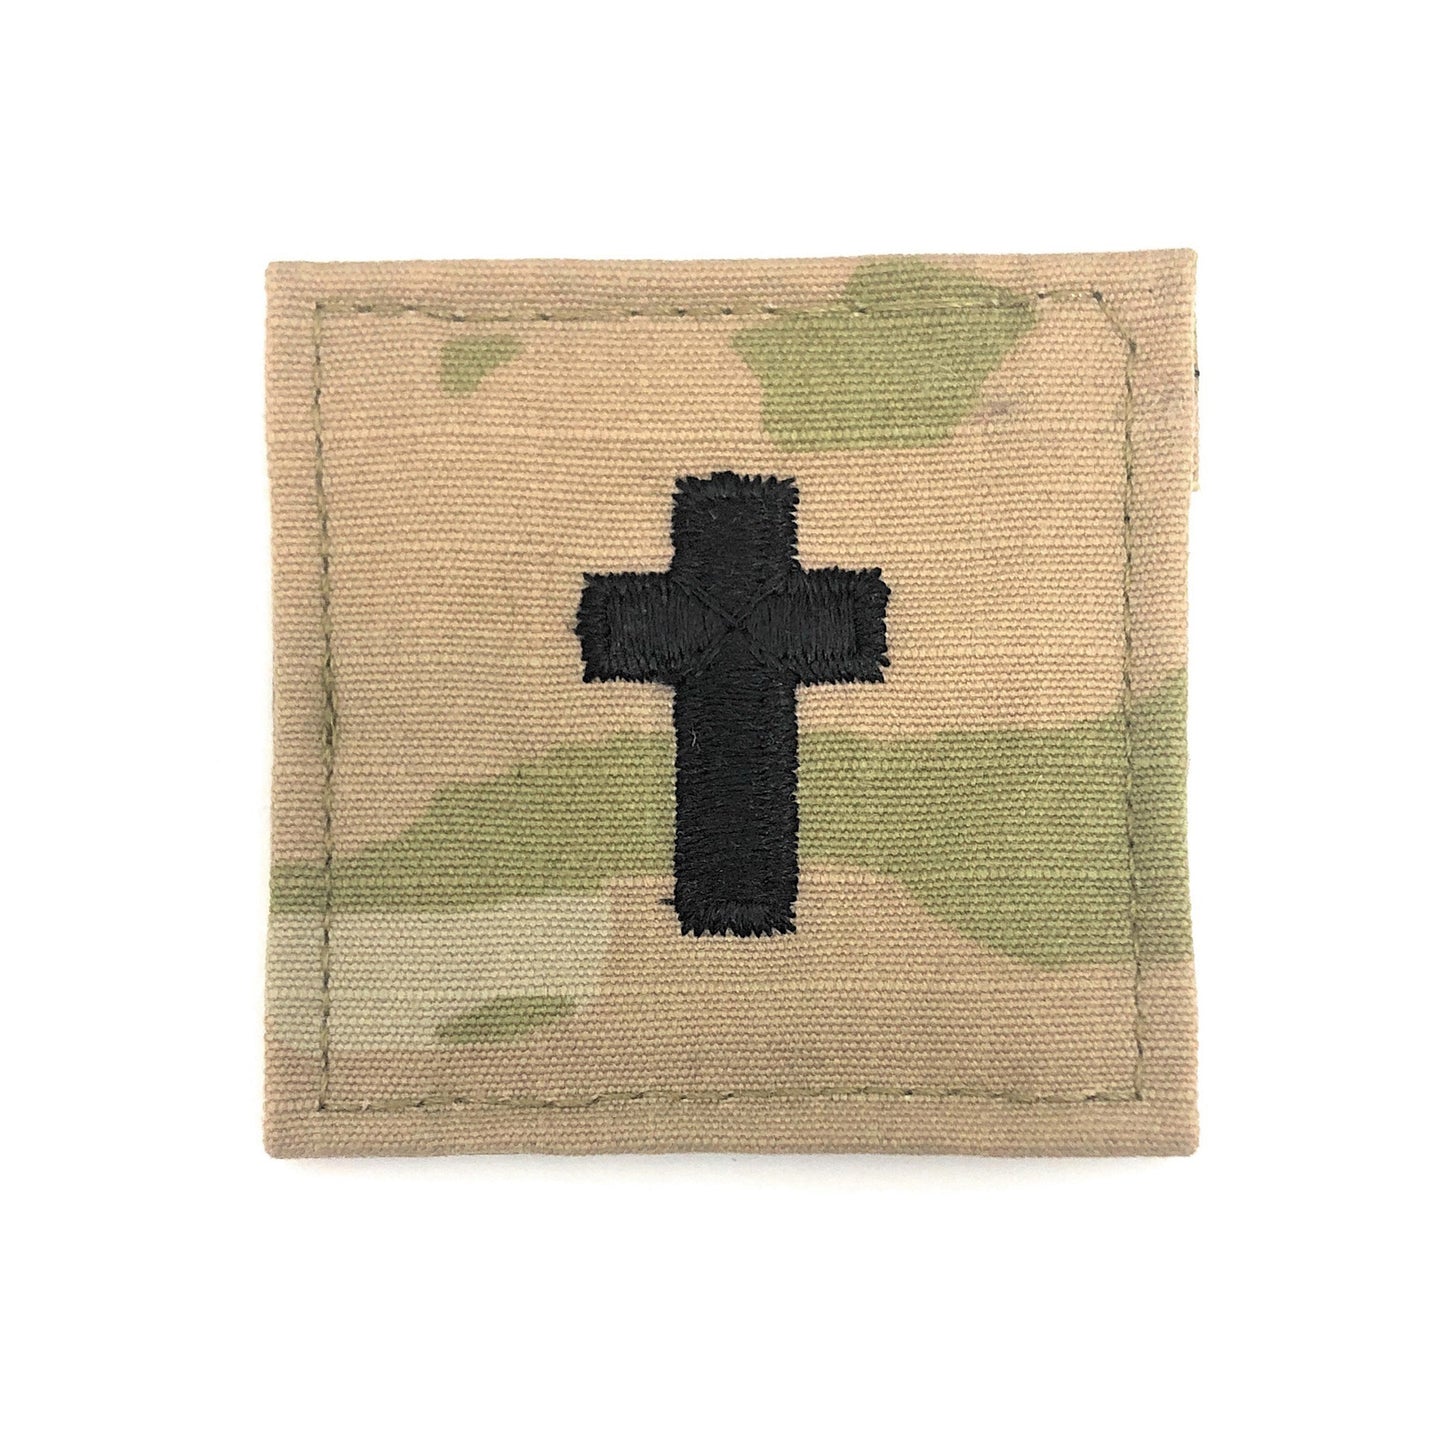 U.S. Army Chaplain Christian OCP with Velcro